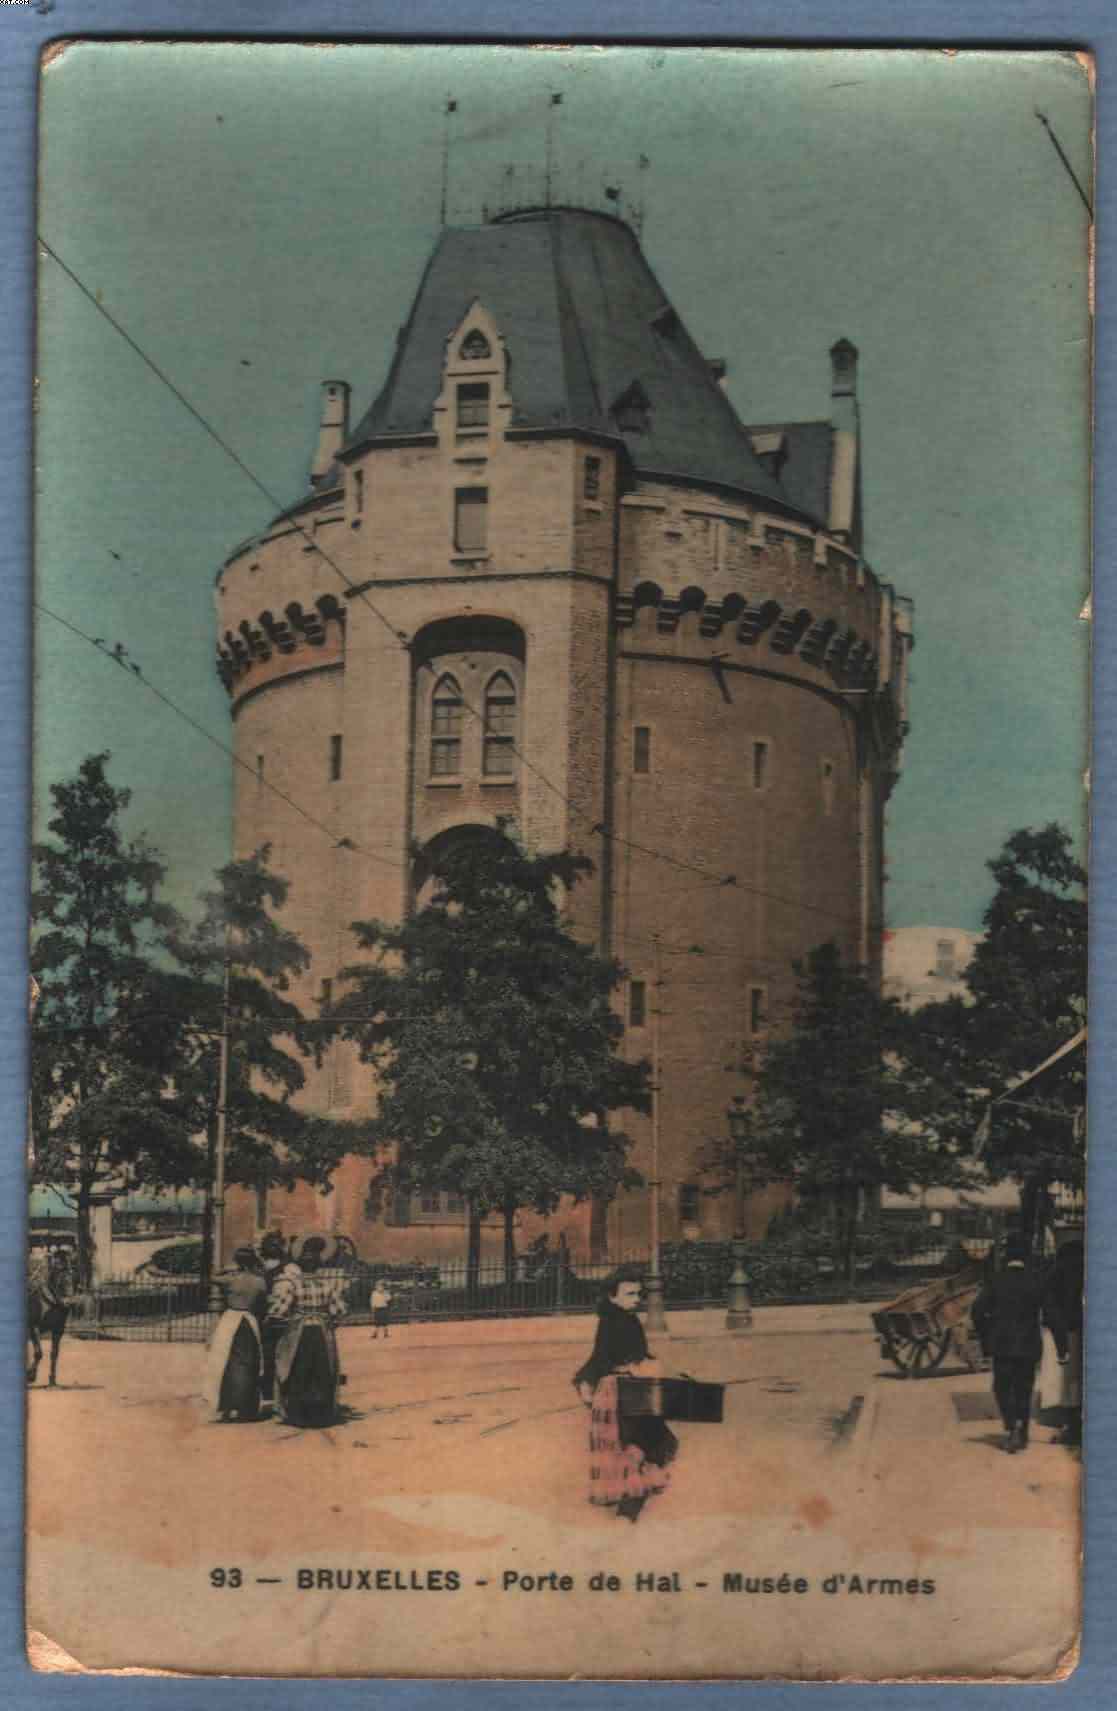 * BRUXELLES - BRUSSEL * (Edition Grand Bazar Anspach Nr. 93) Porte De Hal, Musée D'armes, De Halletoren, Wapenmuseum - Musées